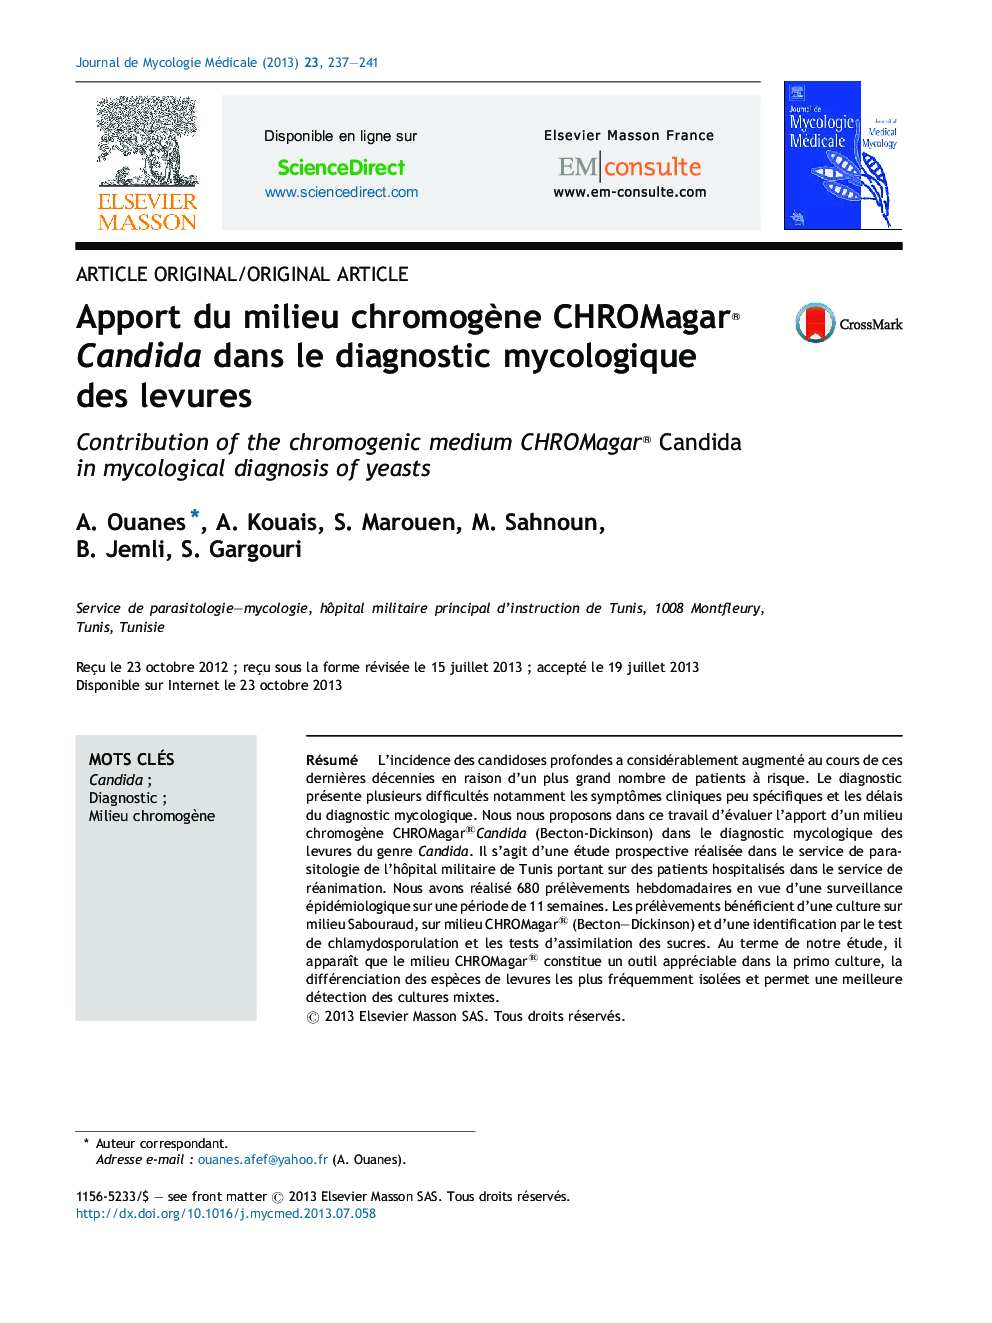 Apport du milieu chromogène CHROMagar®Candida dans le diagnostic mycologique des levures